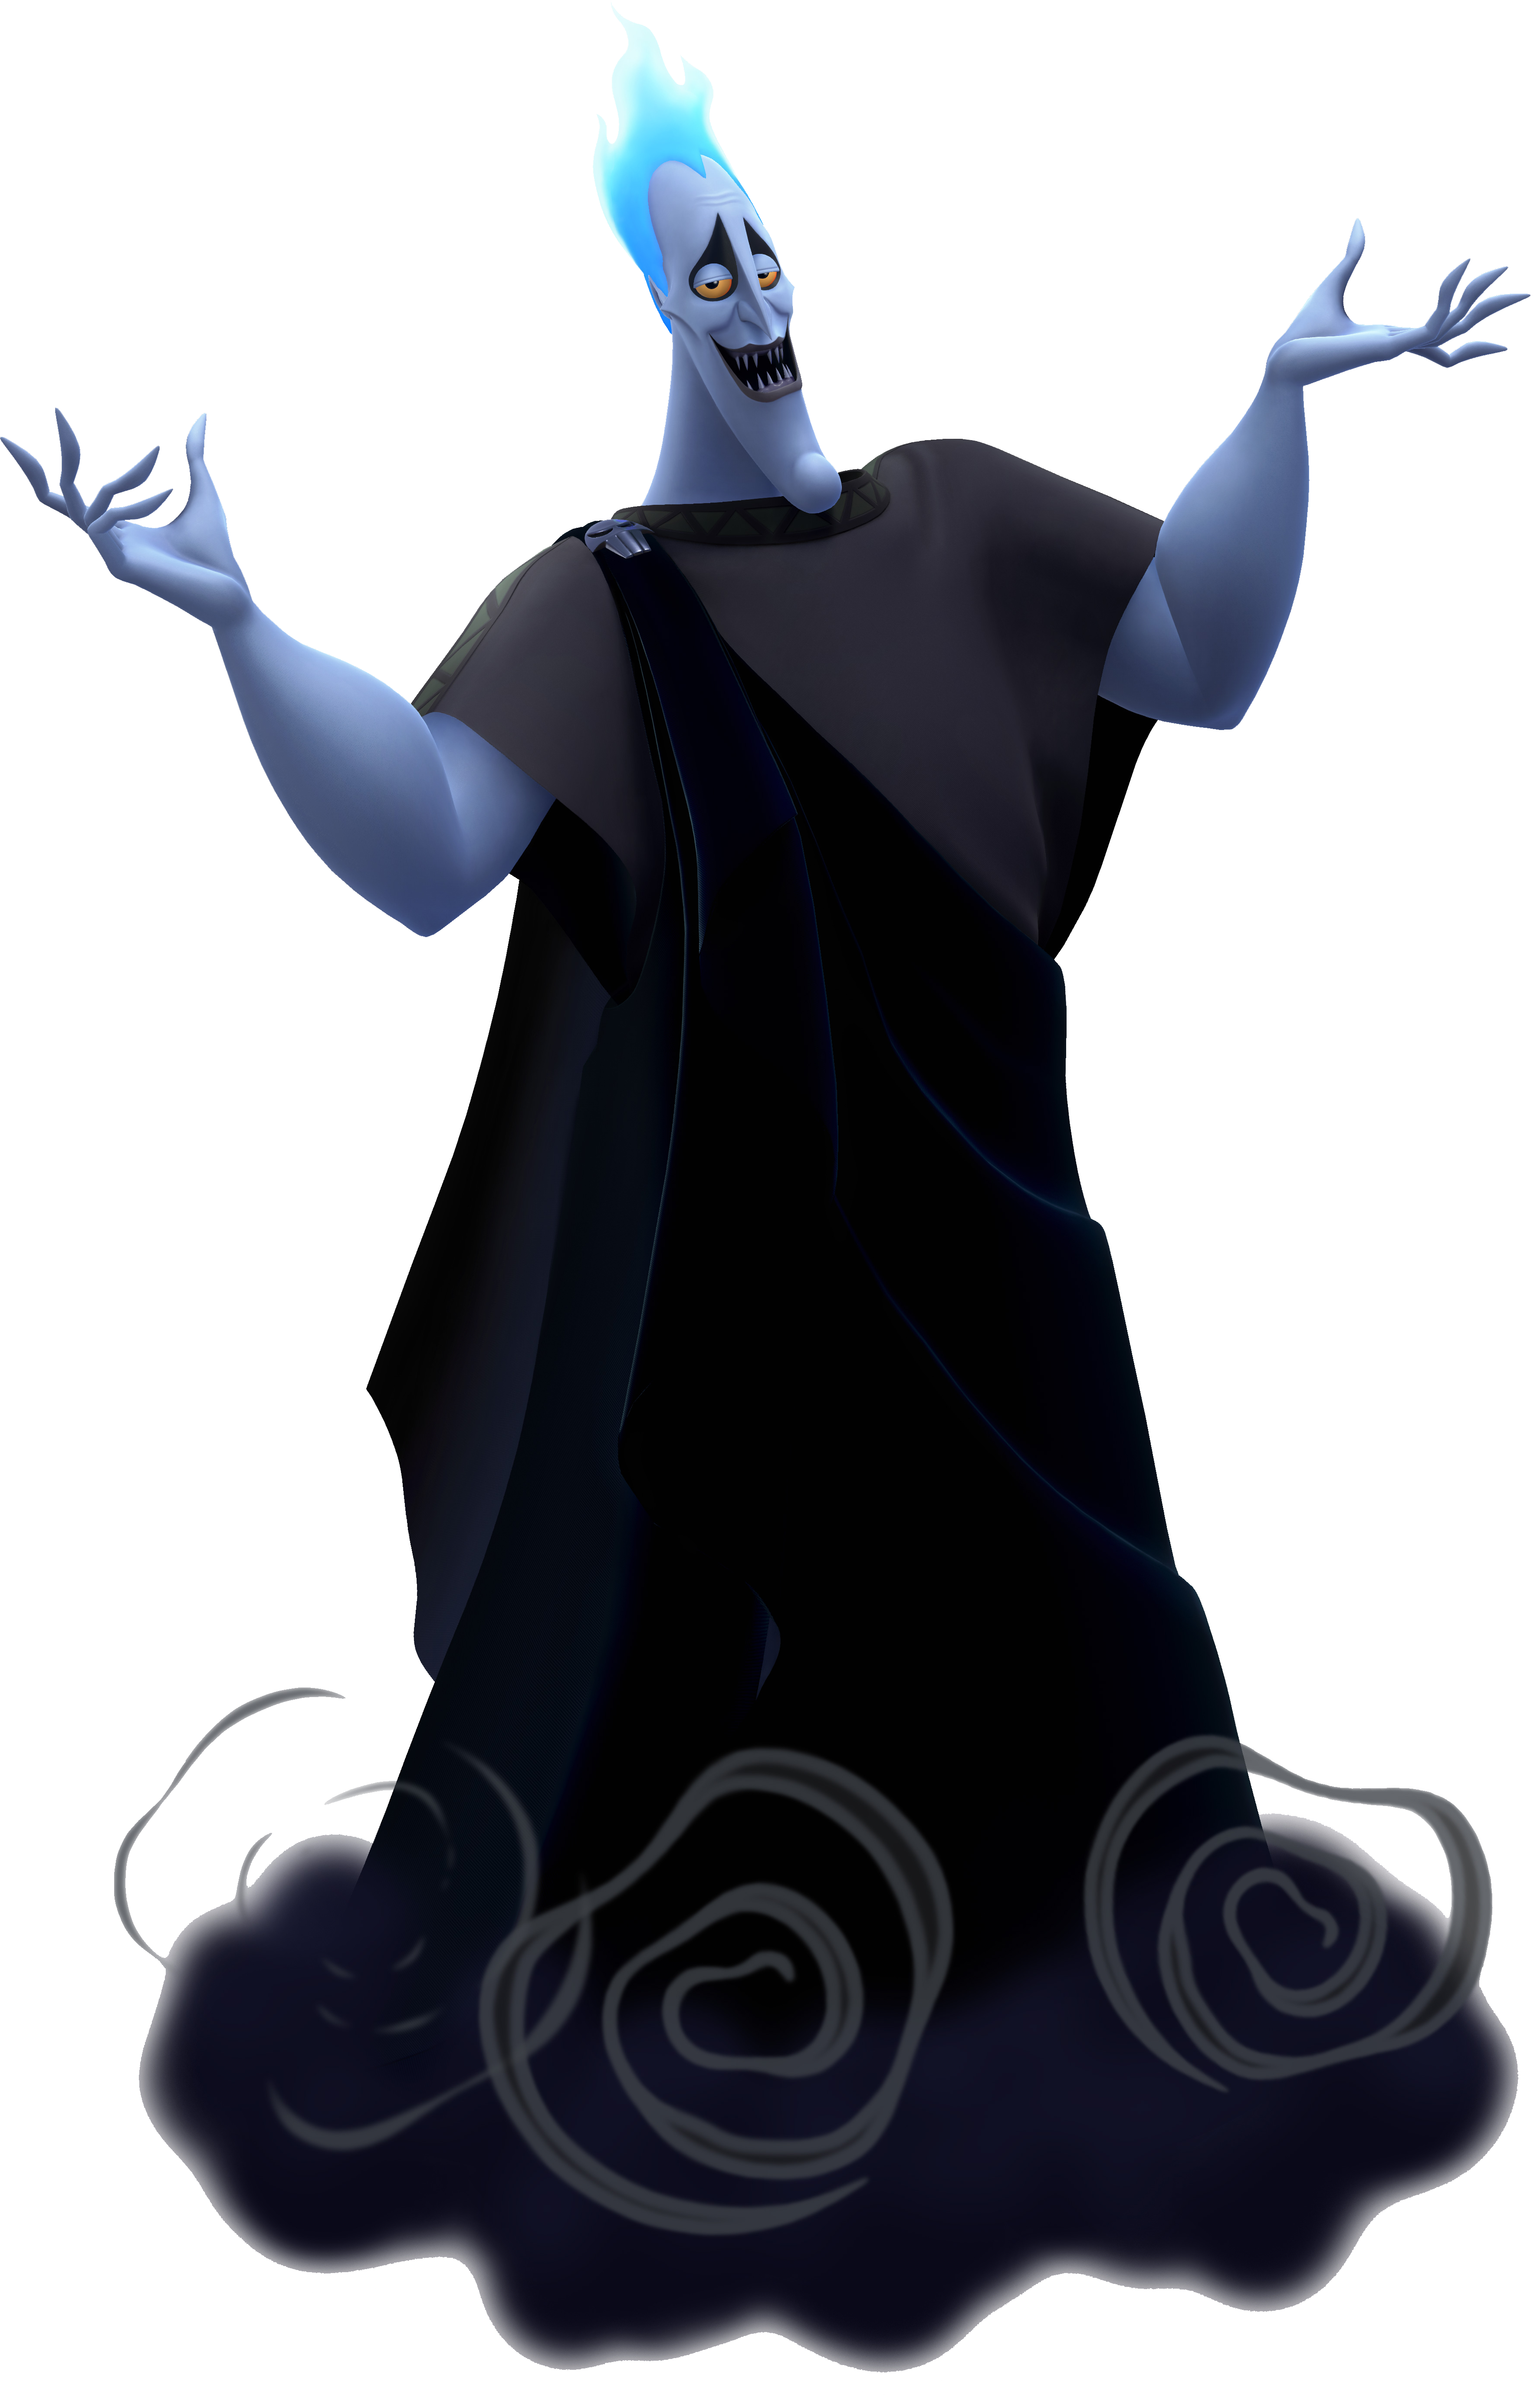 Luca Paguro icon  Disney villains art, Animated icons, Disney icons